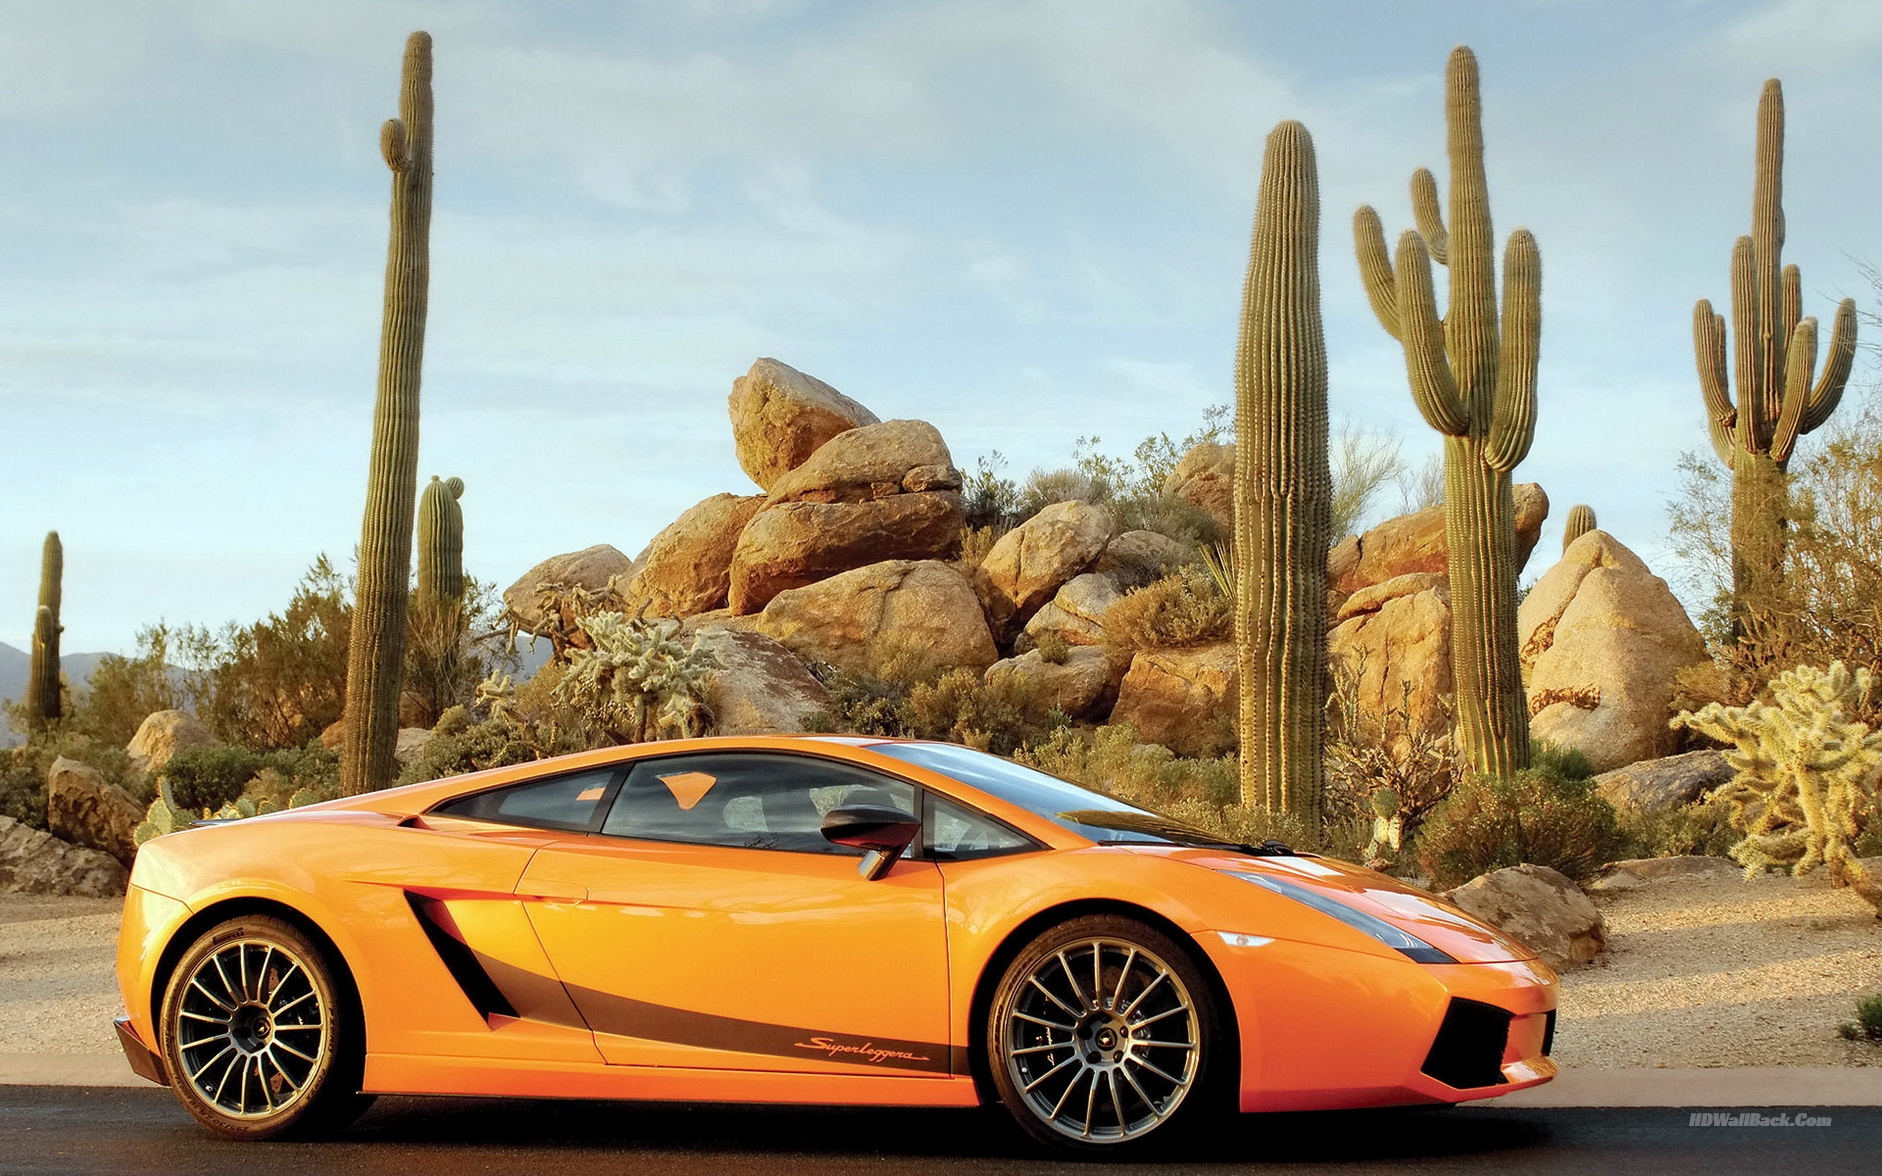 Download Wallpapers Lamborghini Yellow Car Hd Desktop - Car In Desert Hd , HD Wallpaper & Backgrounds